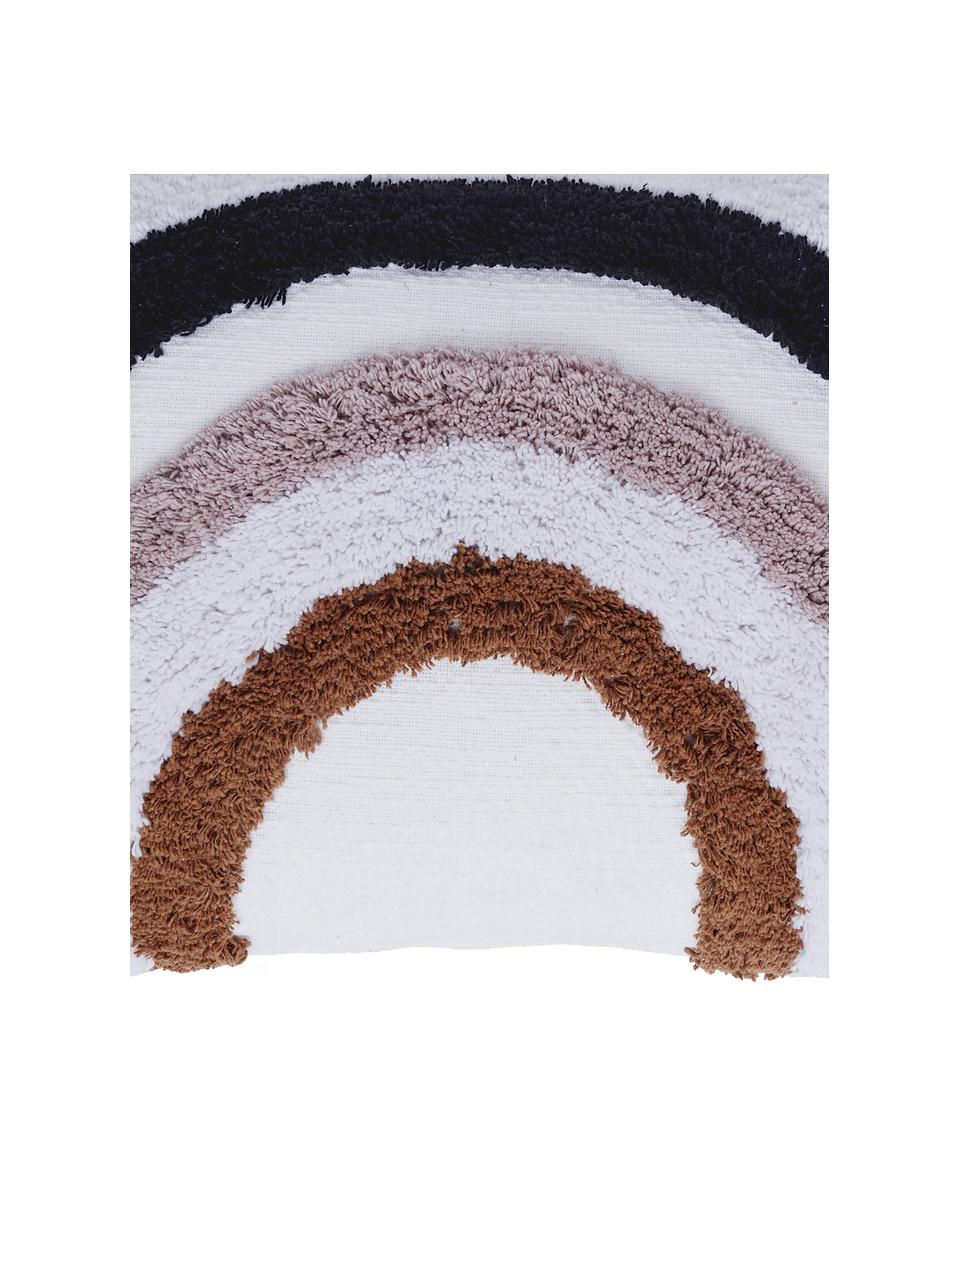 Funda de cojín texturizado Arco, 100% algodón, Blanco, rosa palo, azul oscuro, marrón, An 40 x L 60 cm